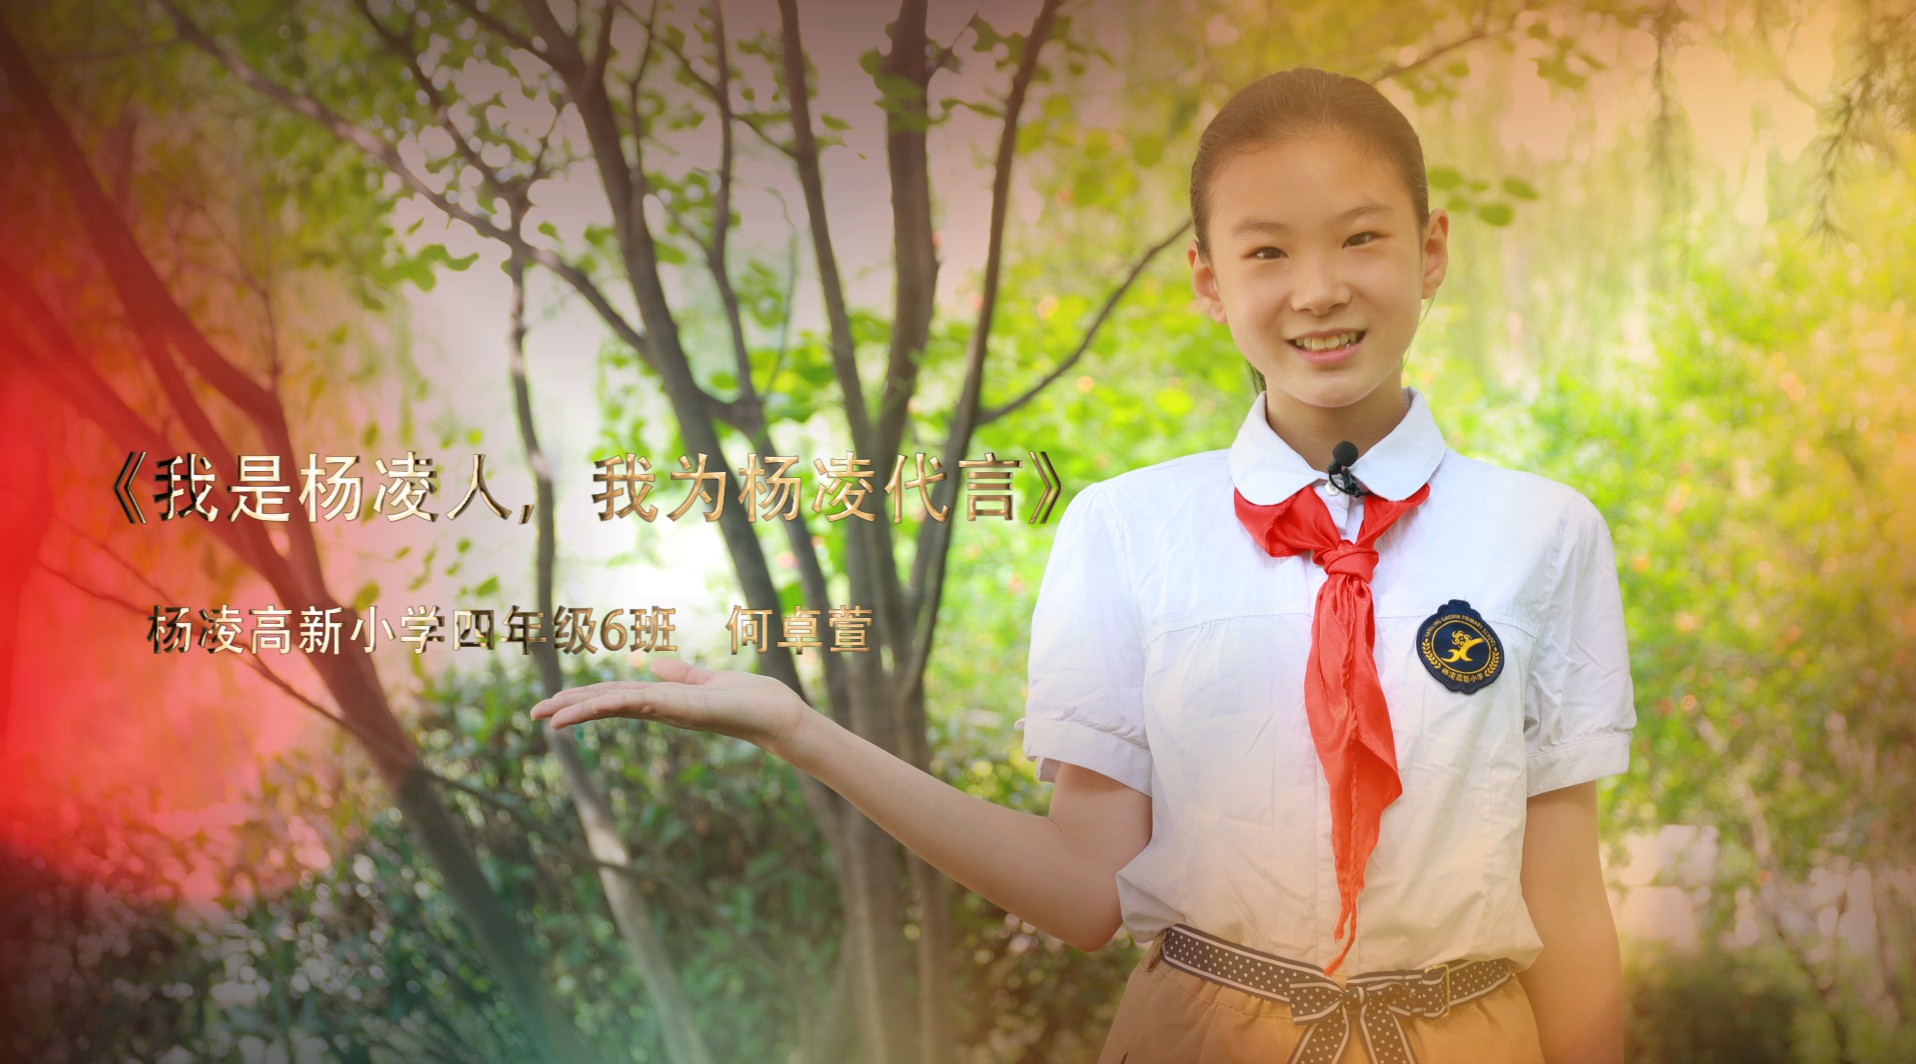 《我为家乡杨凌代言》-杨凌高新小学四年级6班的学生何卓萱 